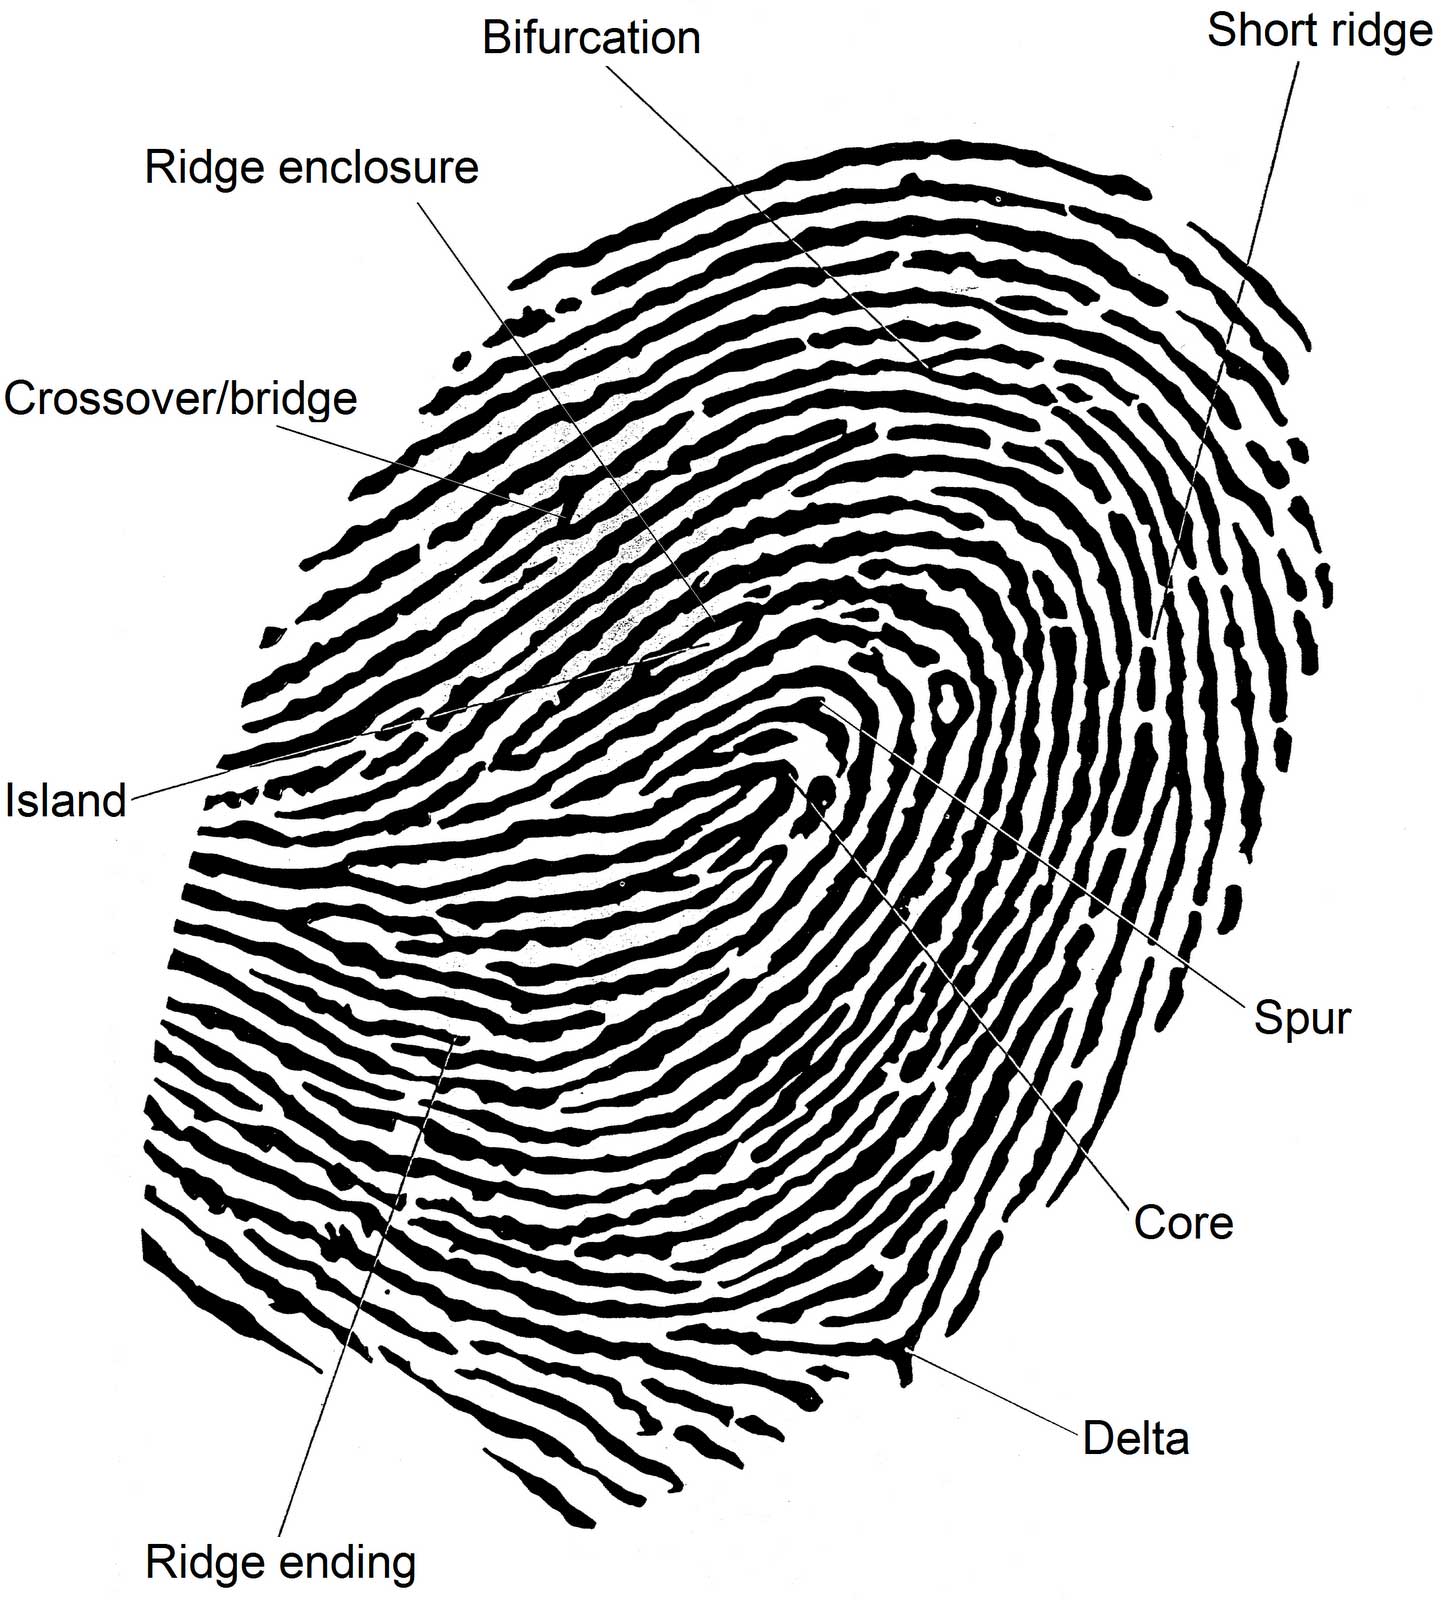 The fingerprint explained